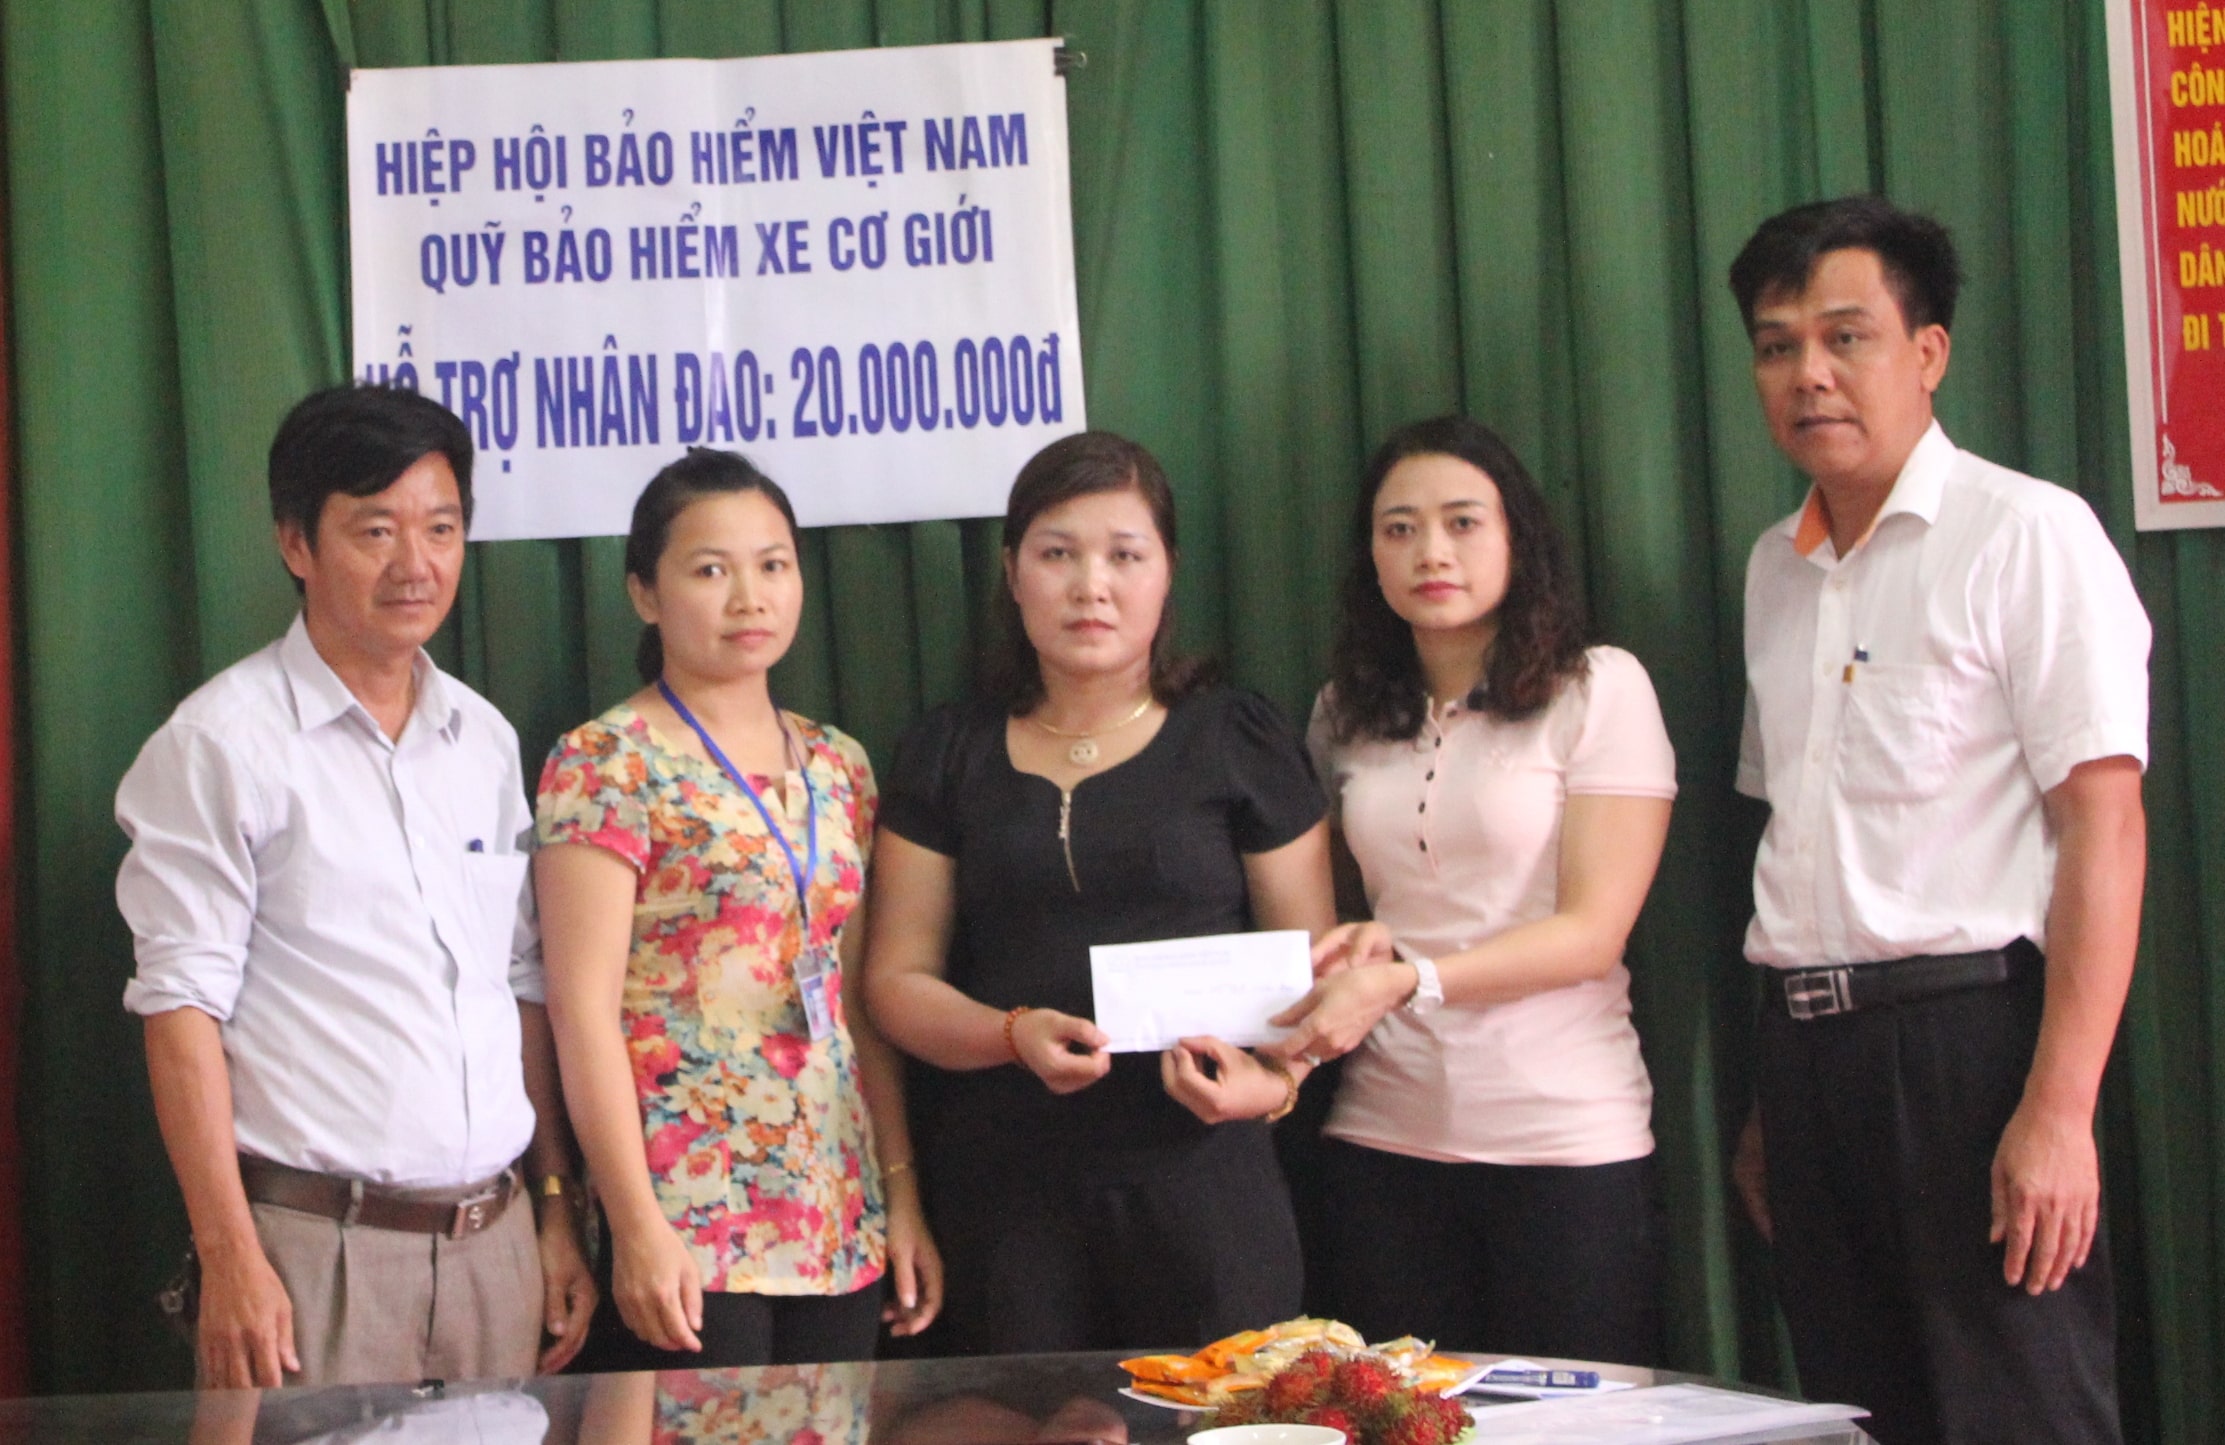 Quỹ Bảo hiểm xe cơ giới hỗ trợ nhân đạo cho gia đình nạn nhân tử vong do tai nạn giao thông tại Nghệ An